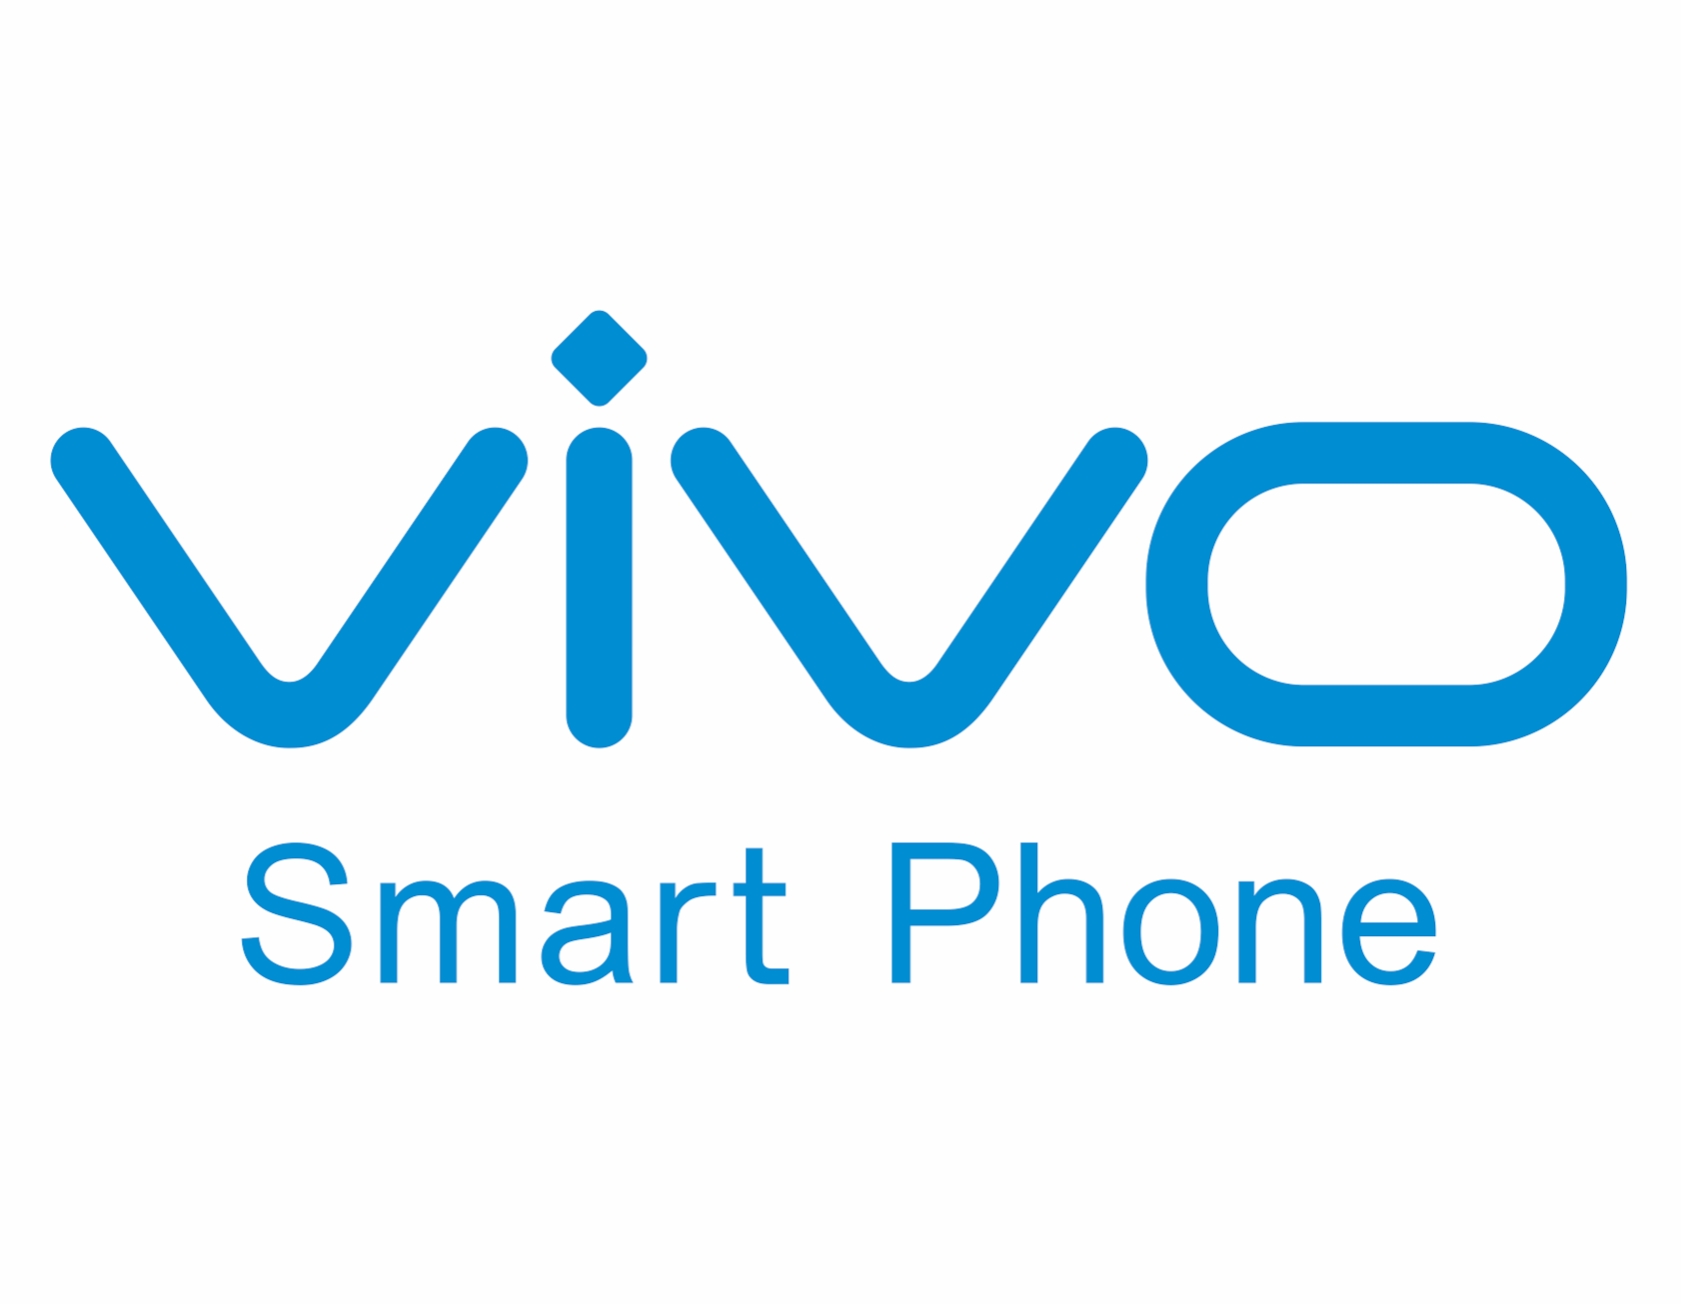 Vivo V11 Pro, Smartphone dengan Screen Touch ID Resmi Meluncur di Indonesia